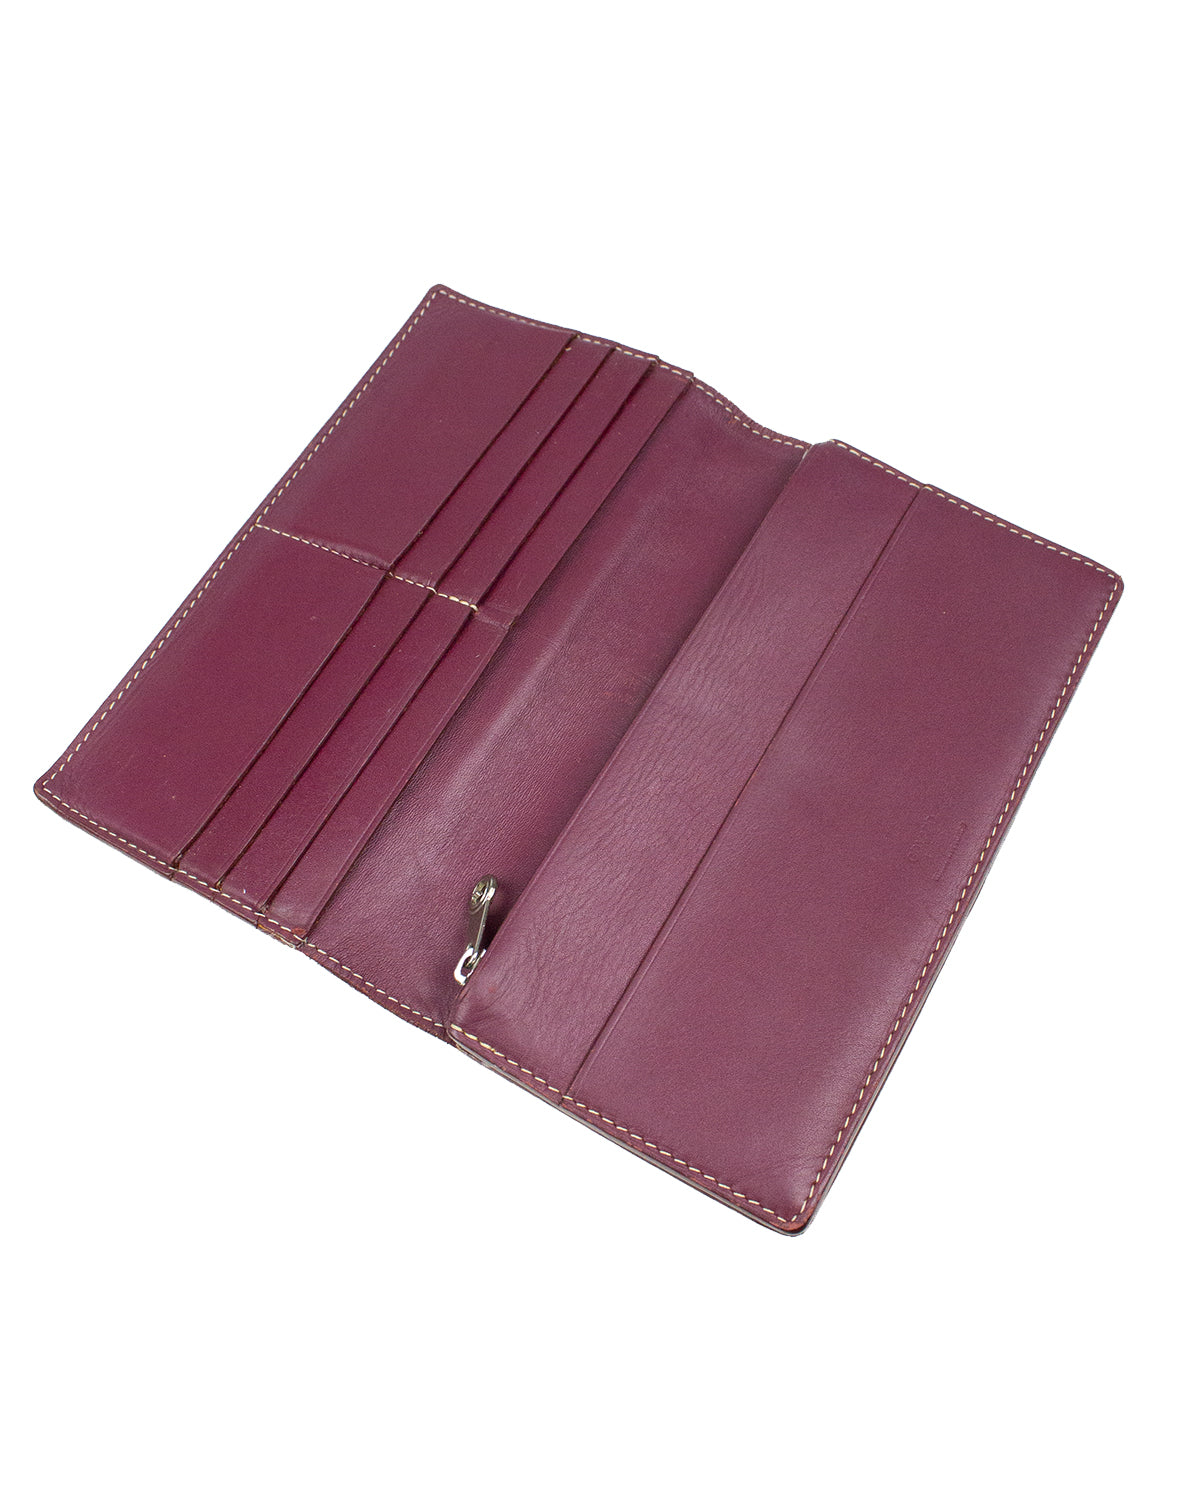 Goyard Goyardine Leather Continental Wallet - Purple Wallets